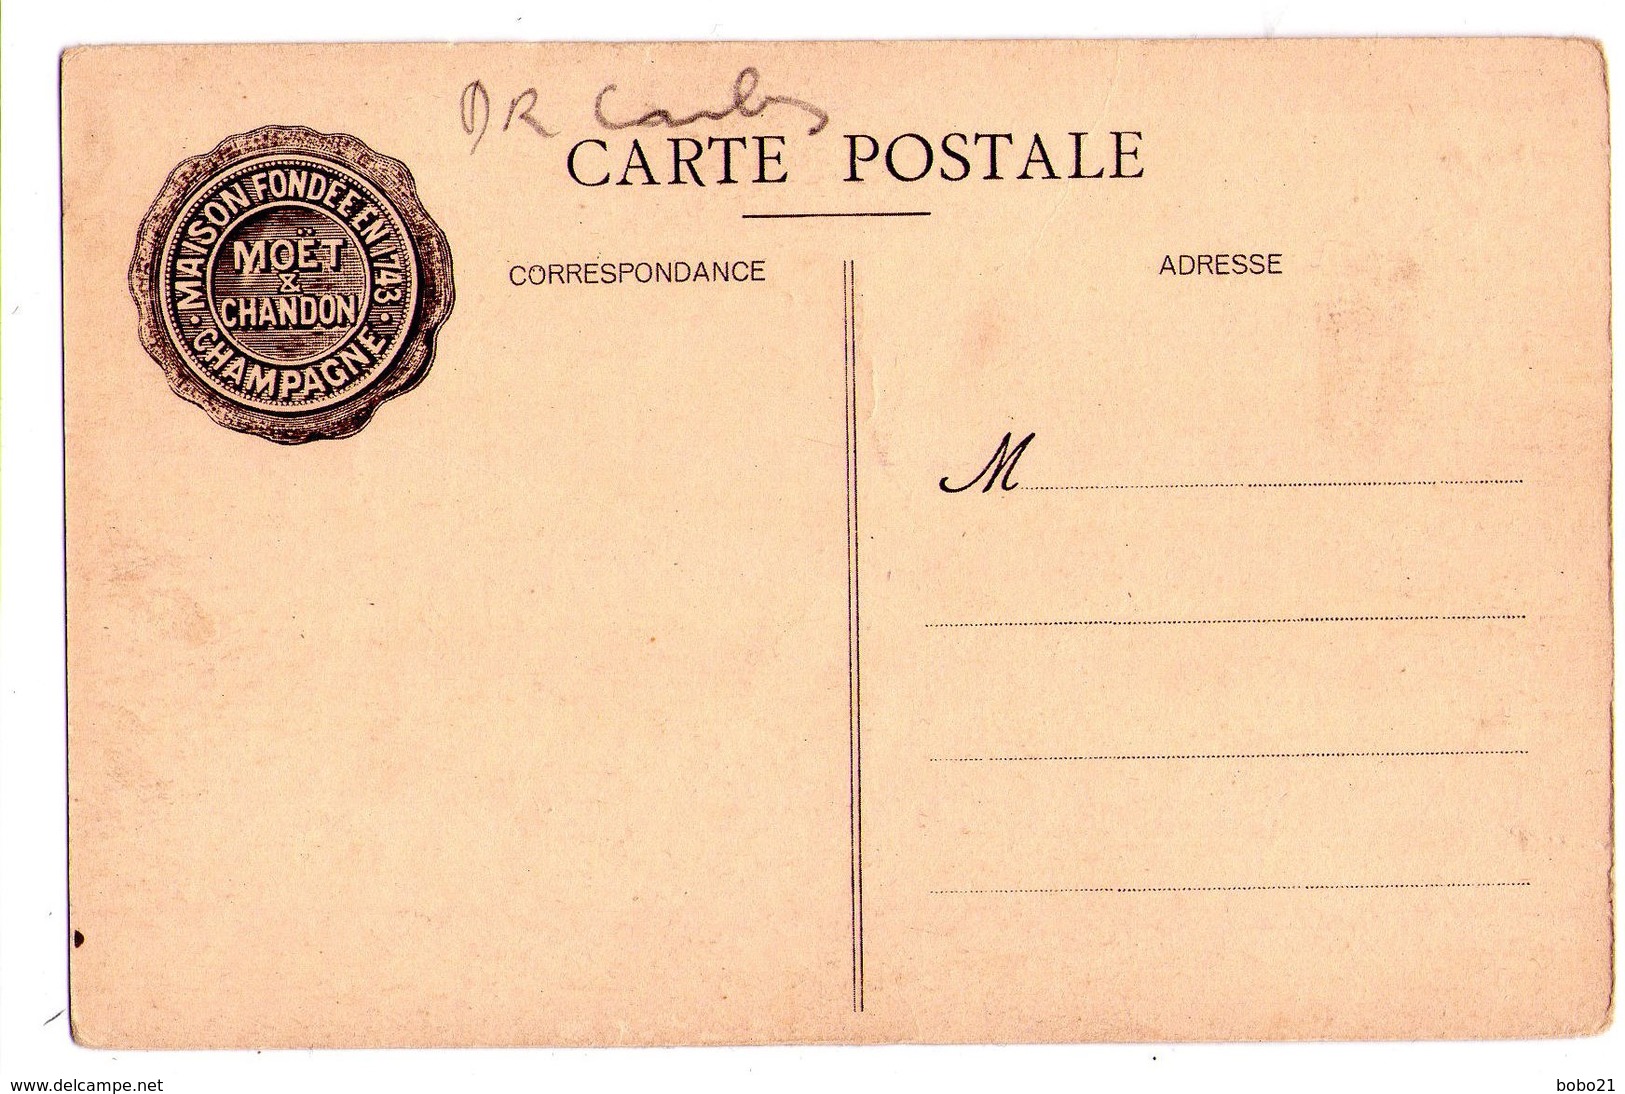 1891 - 11 Cp non circulées sur la Maison " Moët et Chandon " - Em. Choque imp. éd. à Epernay -